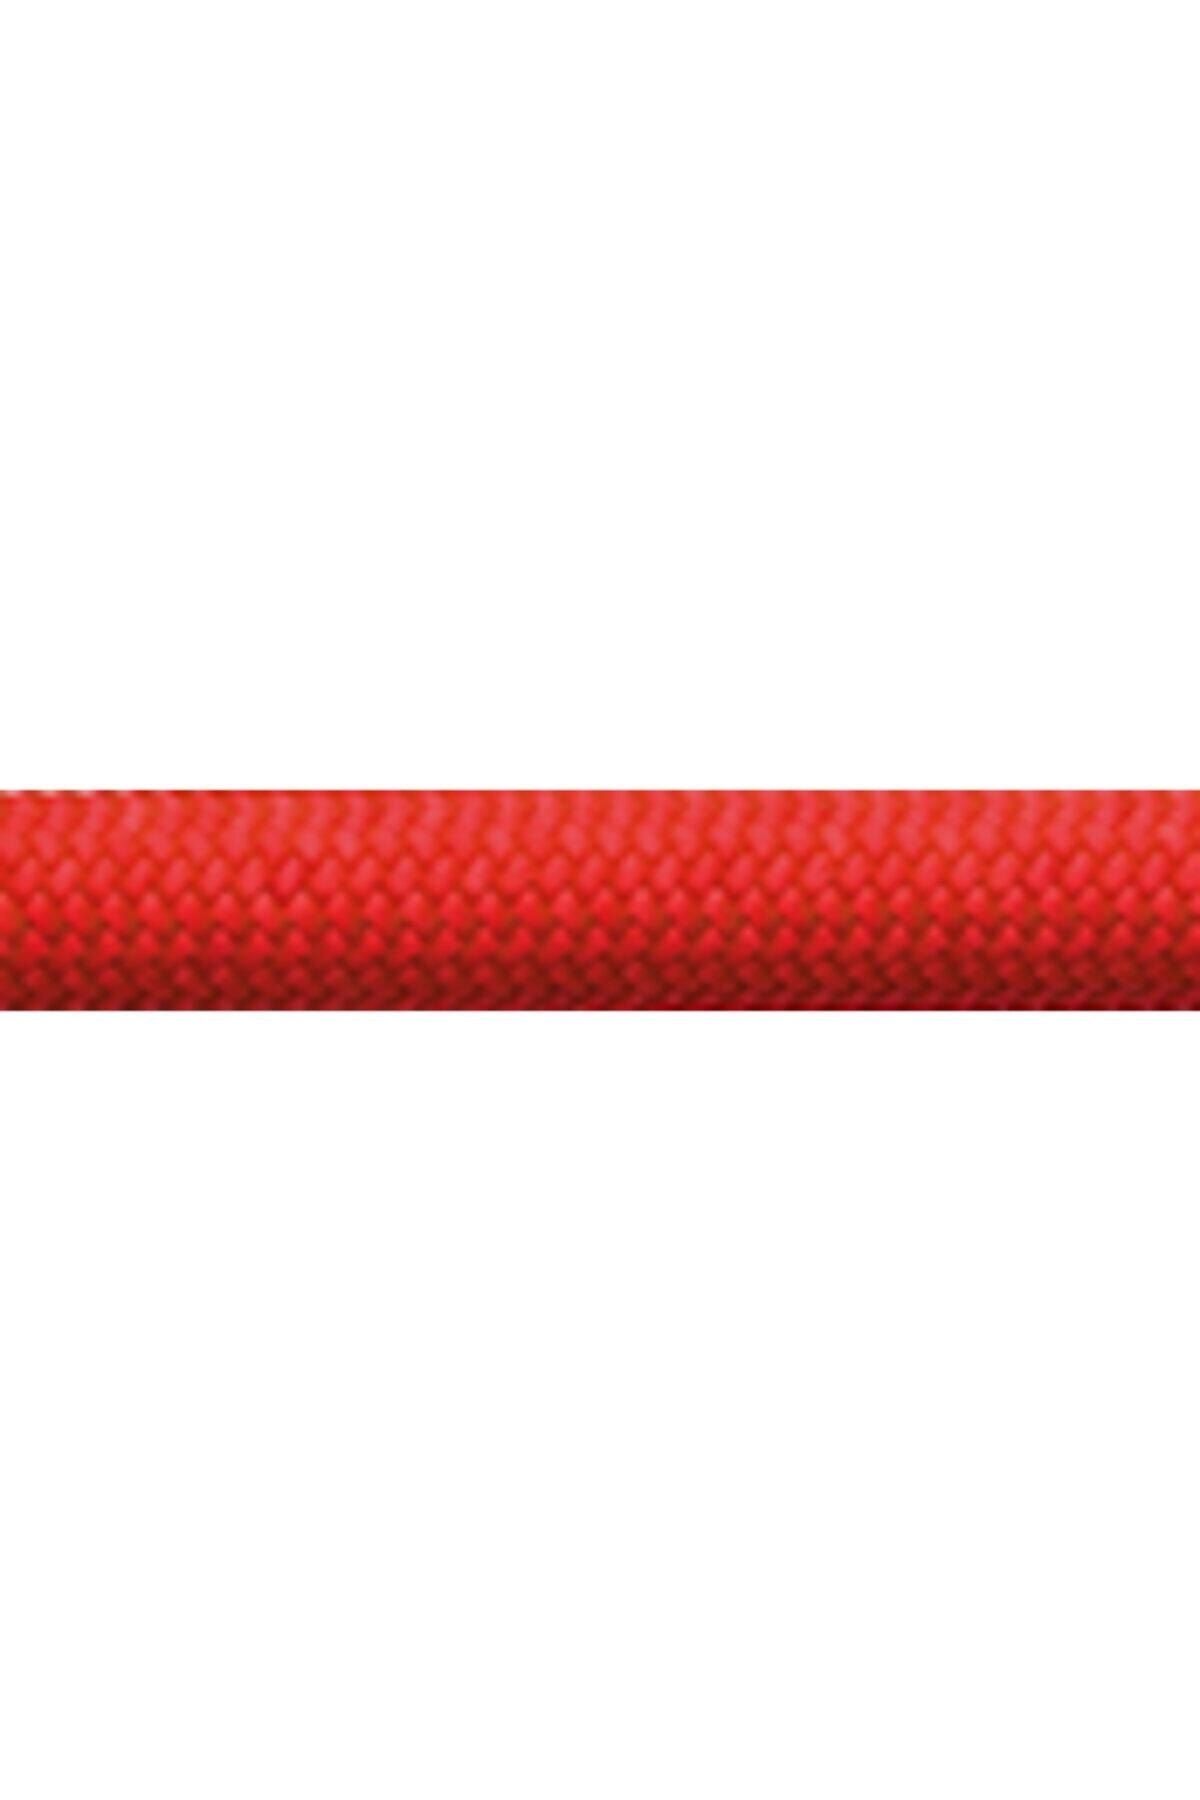 Genel Markalar Maxım Climbing Ropes Equınox Elite 9,7 Mm Red Velvet Std-dry 80m Maxim Dinamik Ip